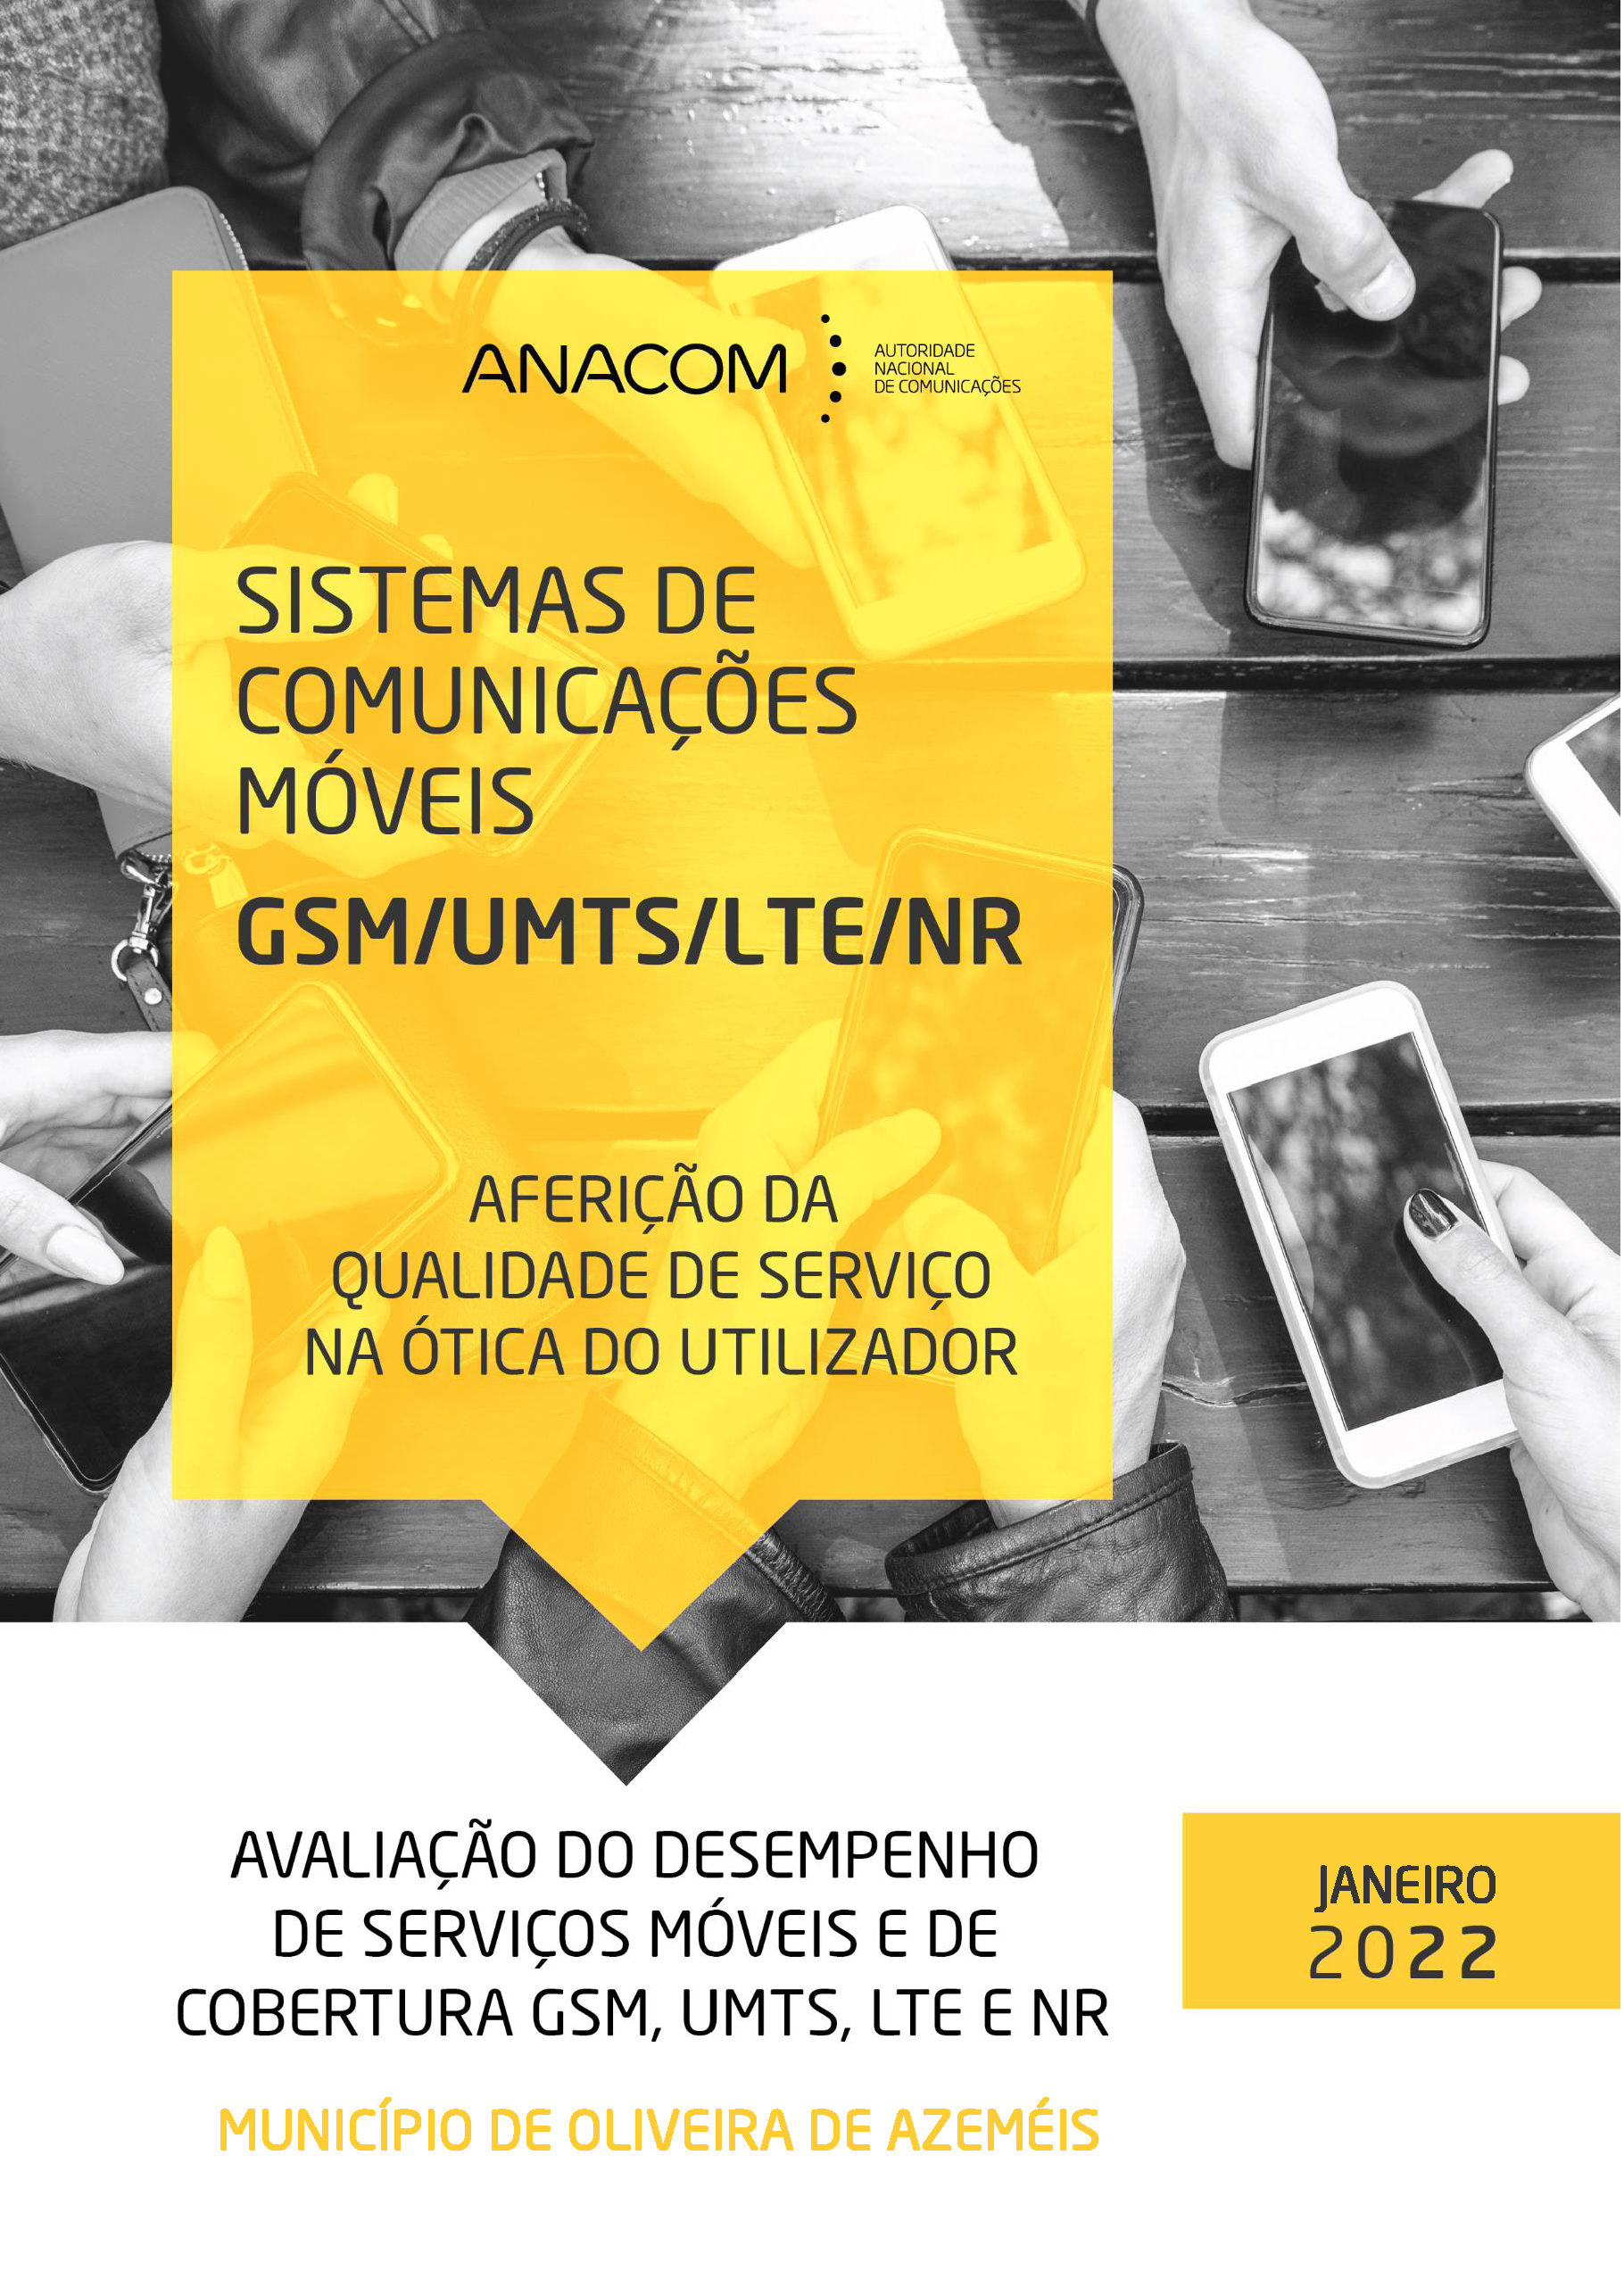 Sistemas de Comunicações Móveis GSM/UMTS/LTE - Avaliação do desempenho de serviços móveis e de cobertura GSM, UMTS e LTE, no Concelho de Oliveira de Azeméis